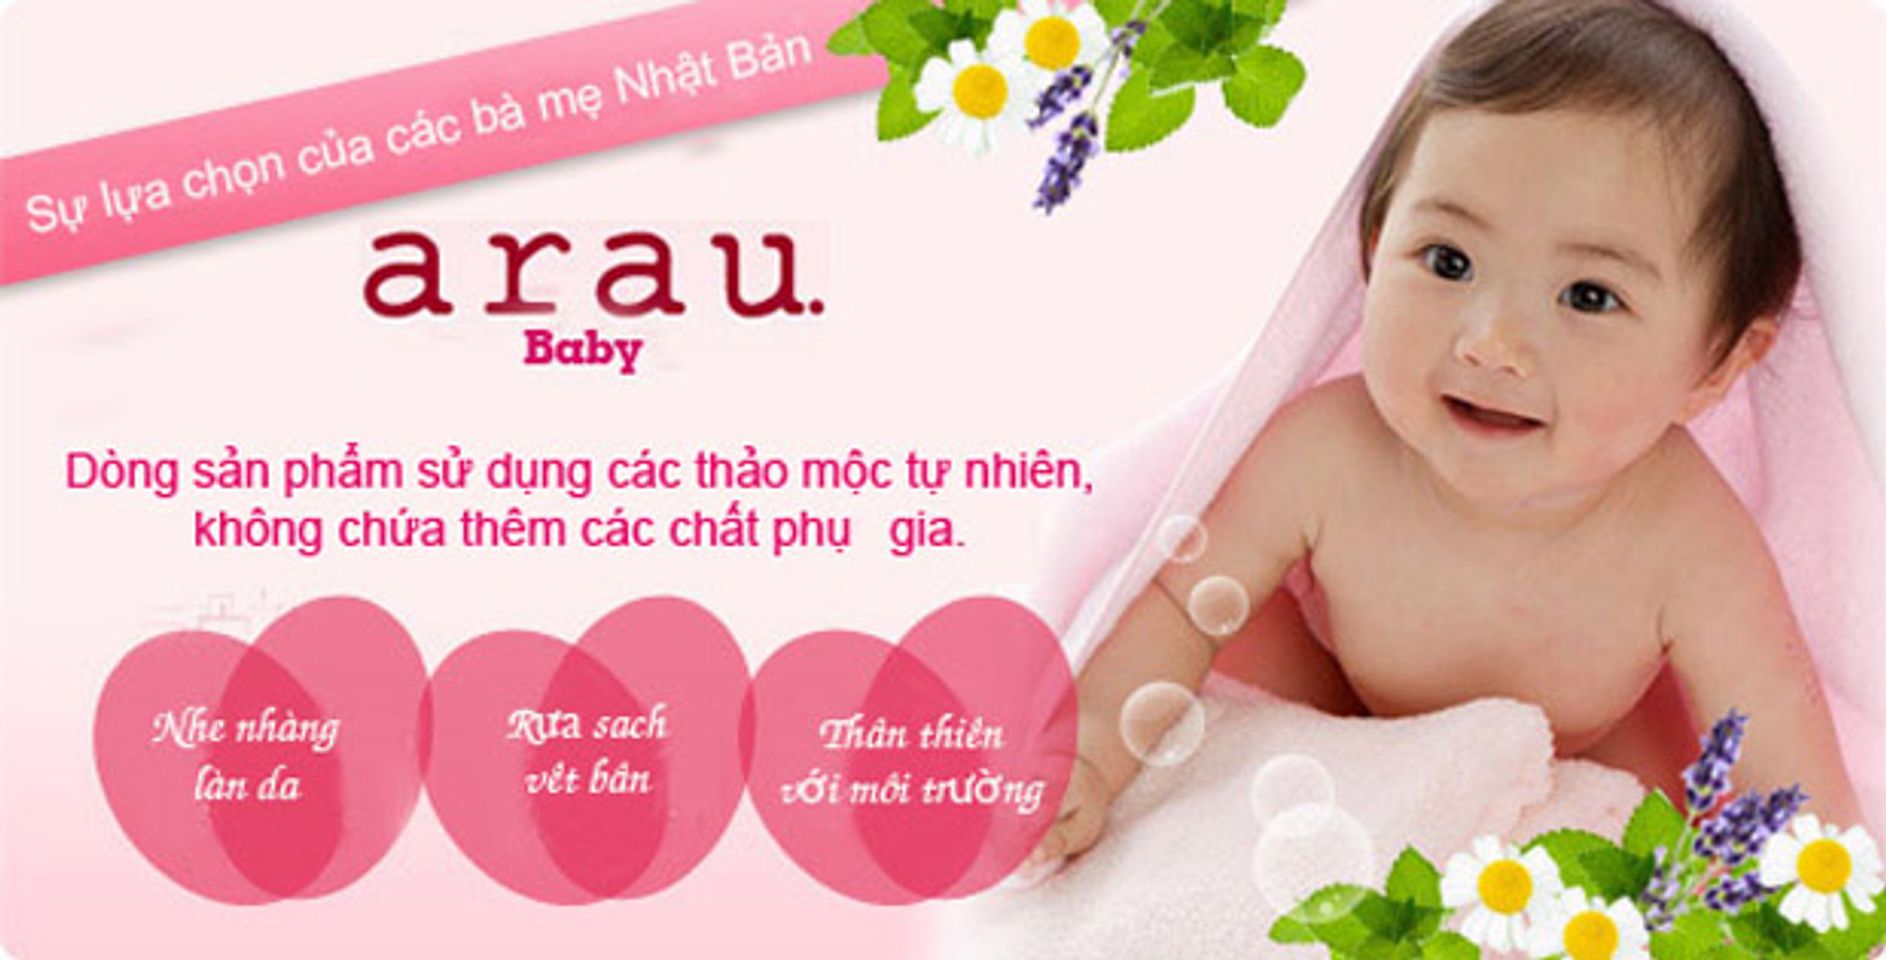 Nước rửa bình sữa Arau Baby không chứa chất tạo mùi tổng hợp